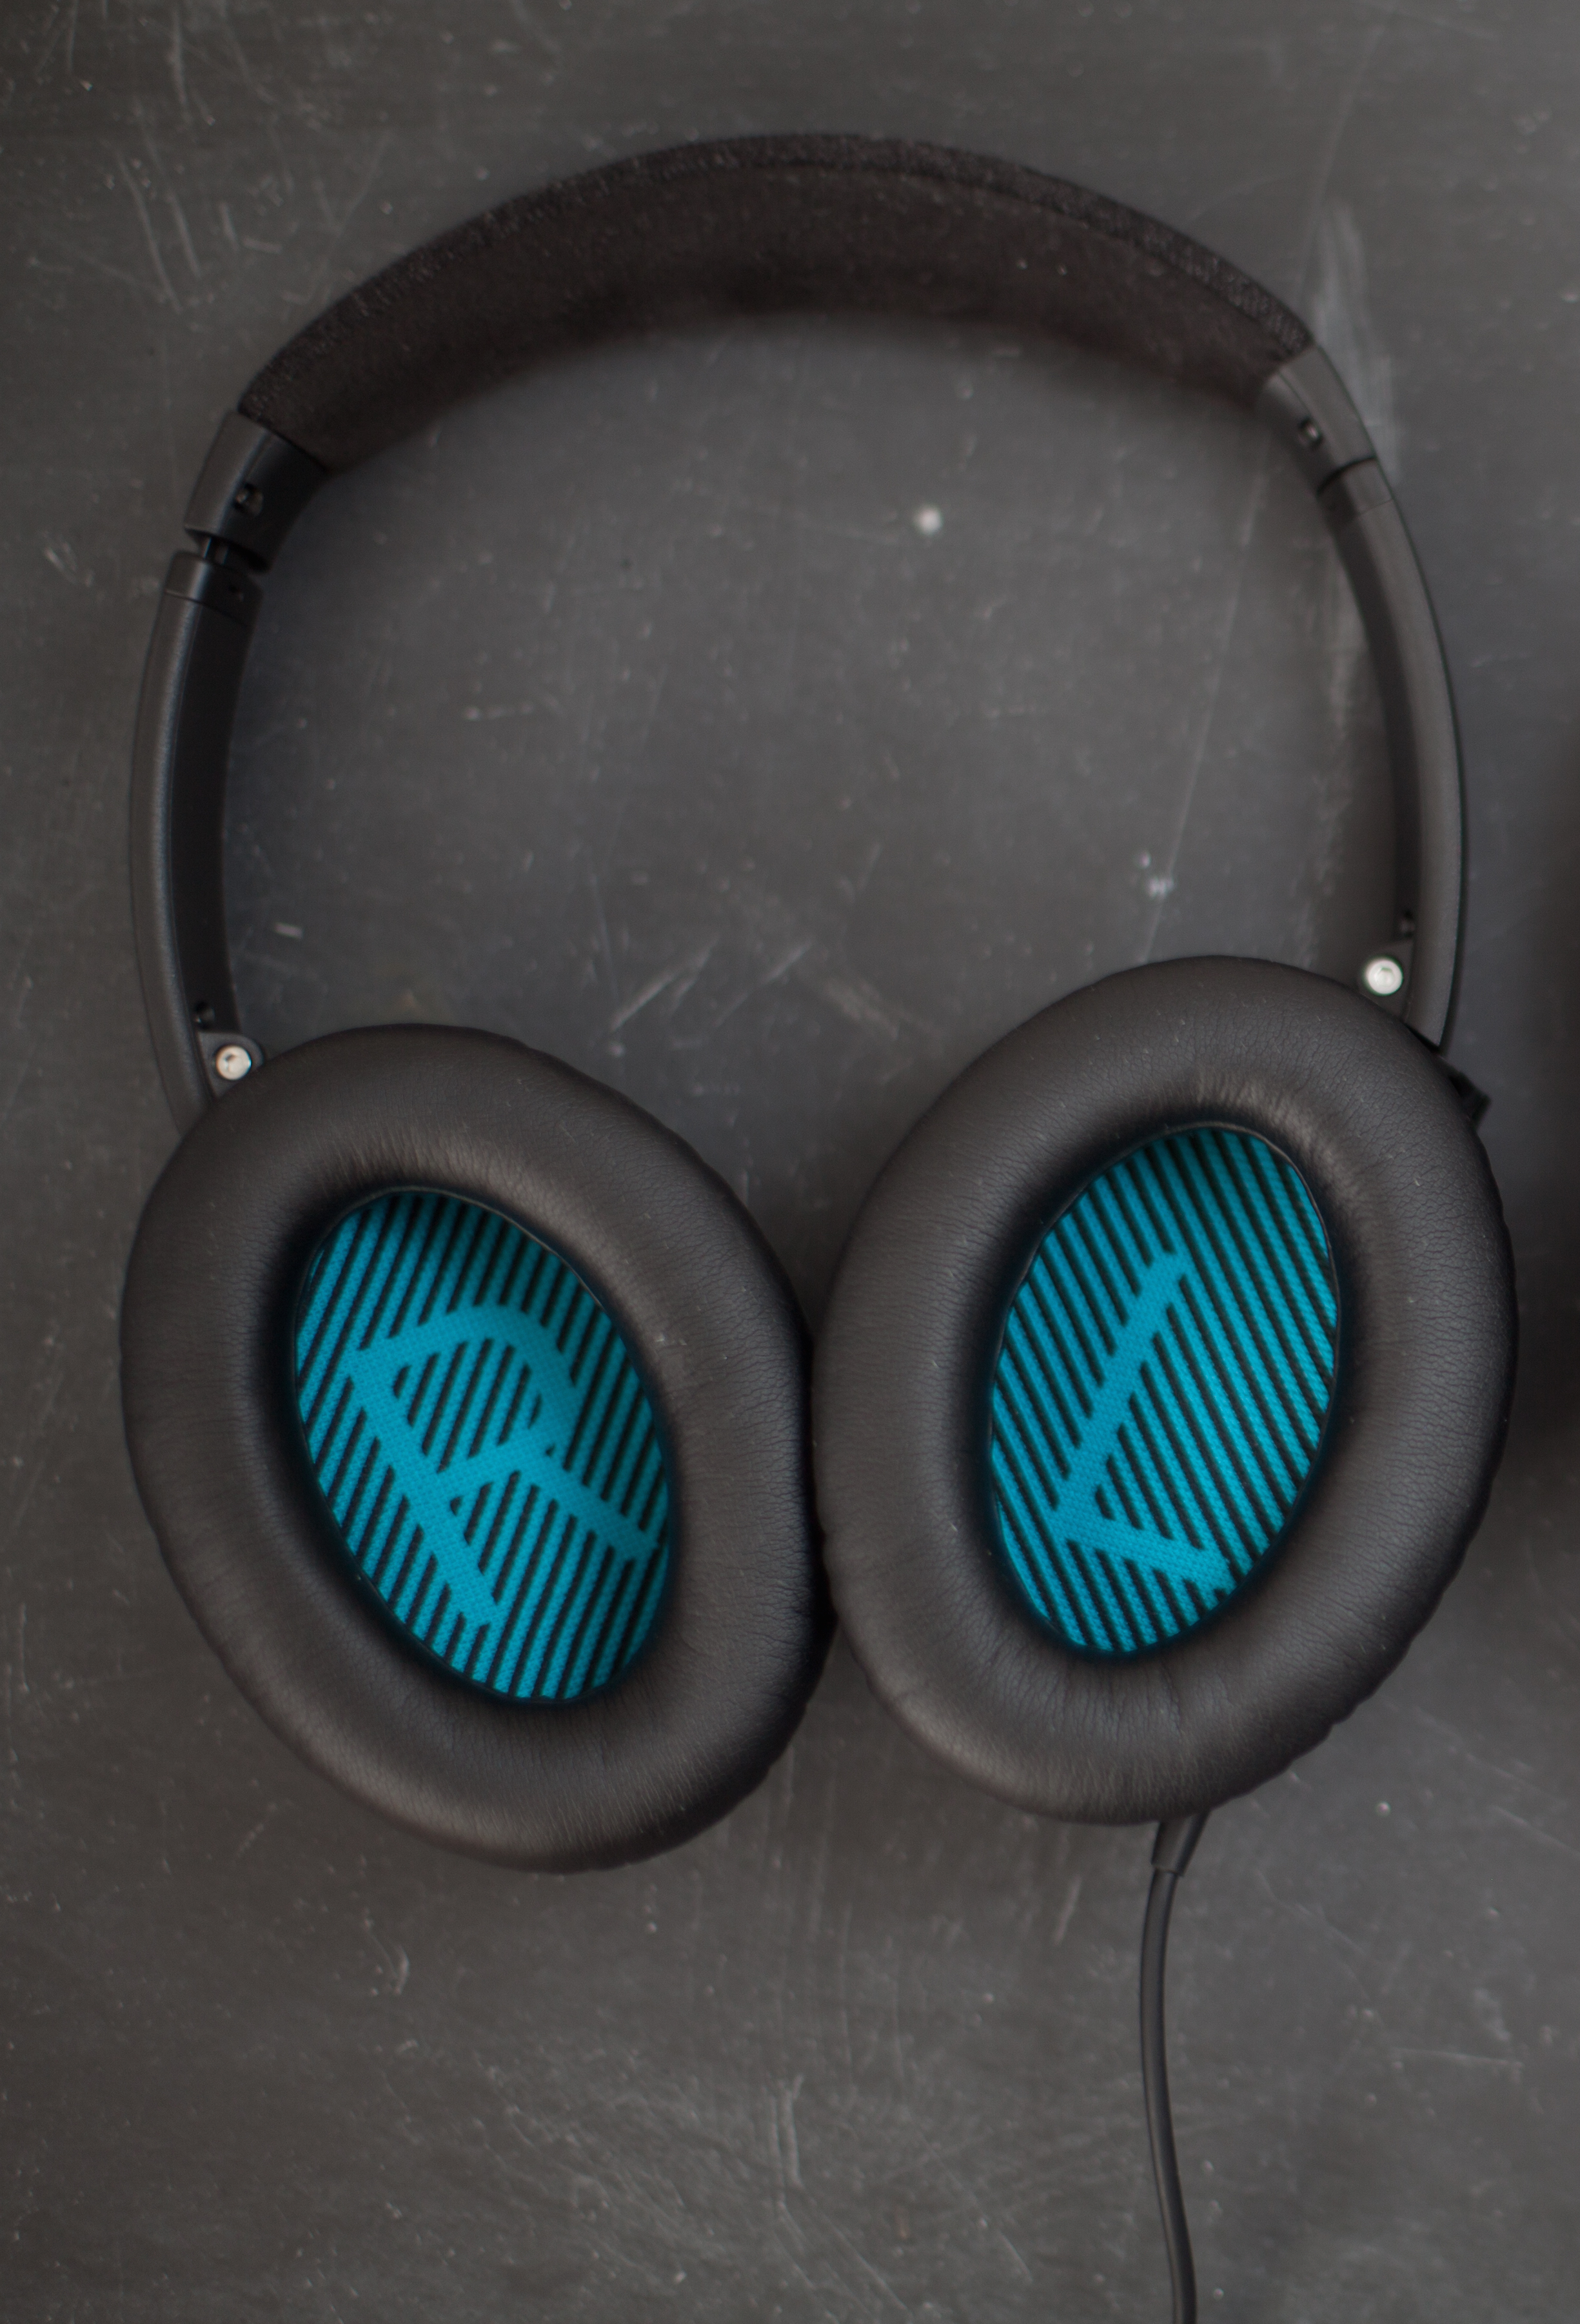 Quiet Comfort 25 Noise-Canceling Headphones Review — CGP Grey